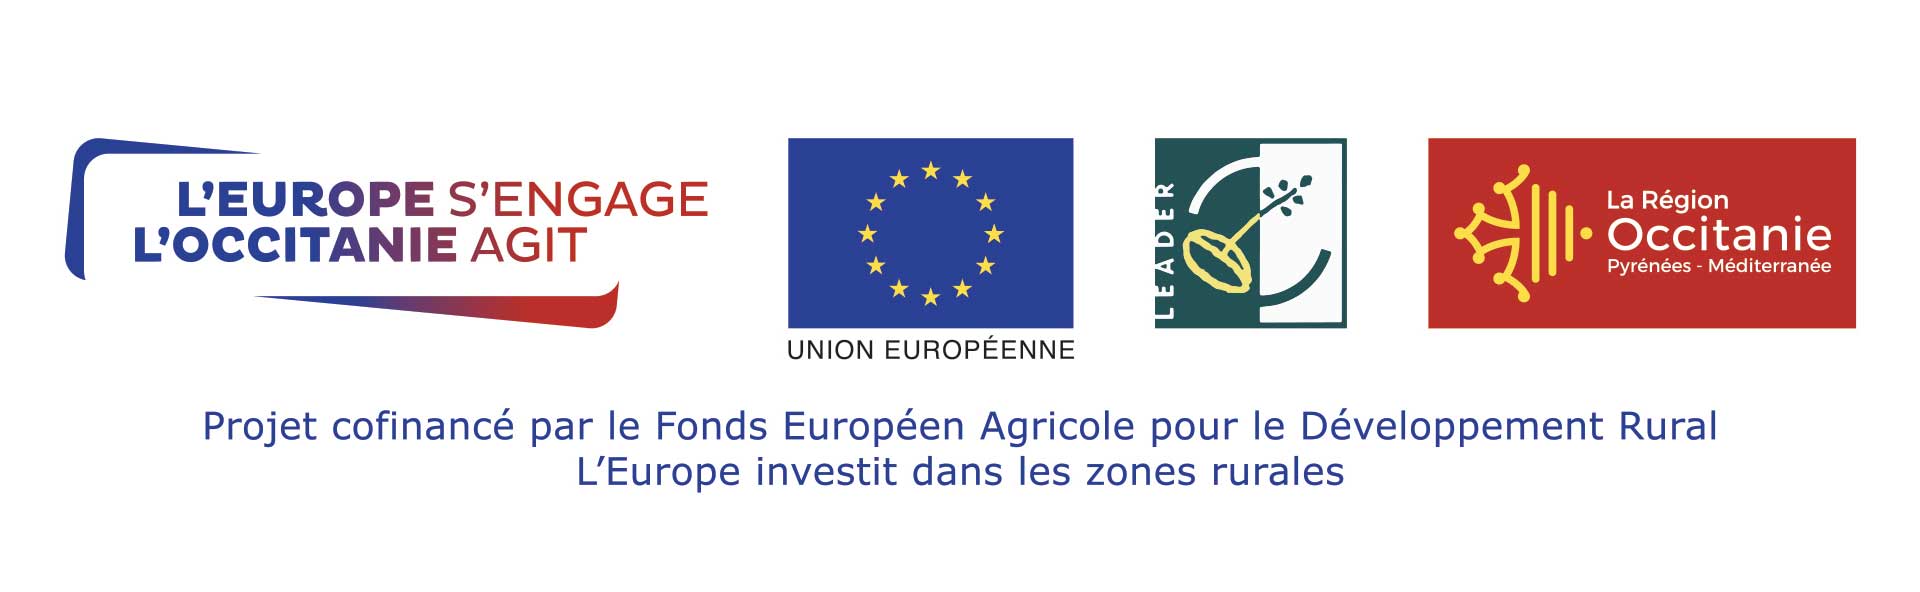 Logos Union Européenne, Leader, la région Occitanie, l'Europe s'engage